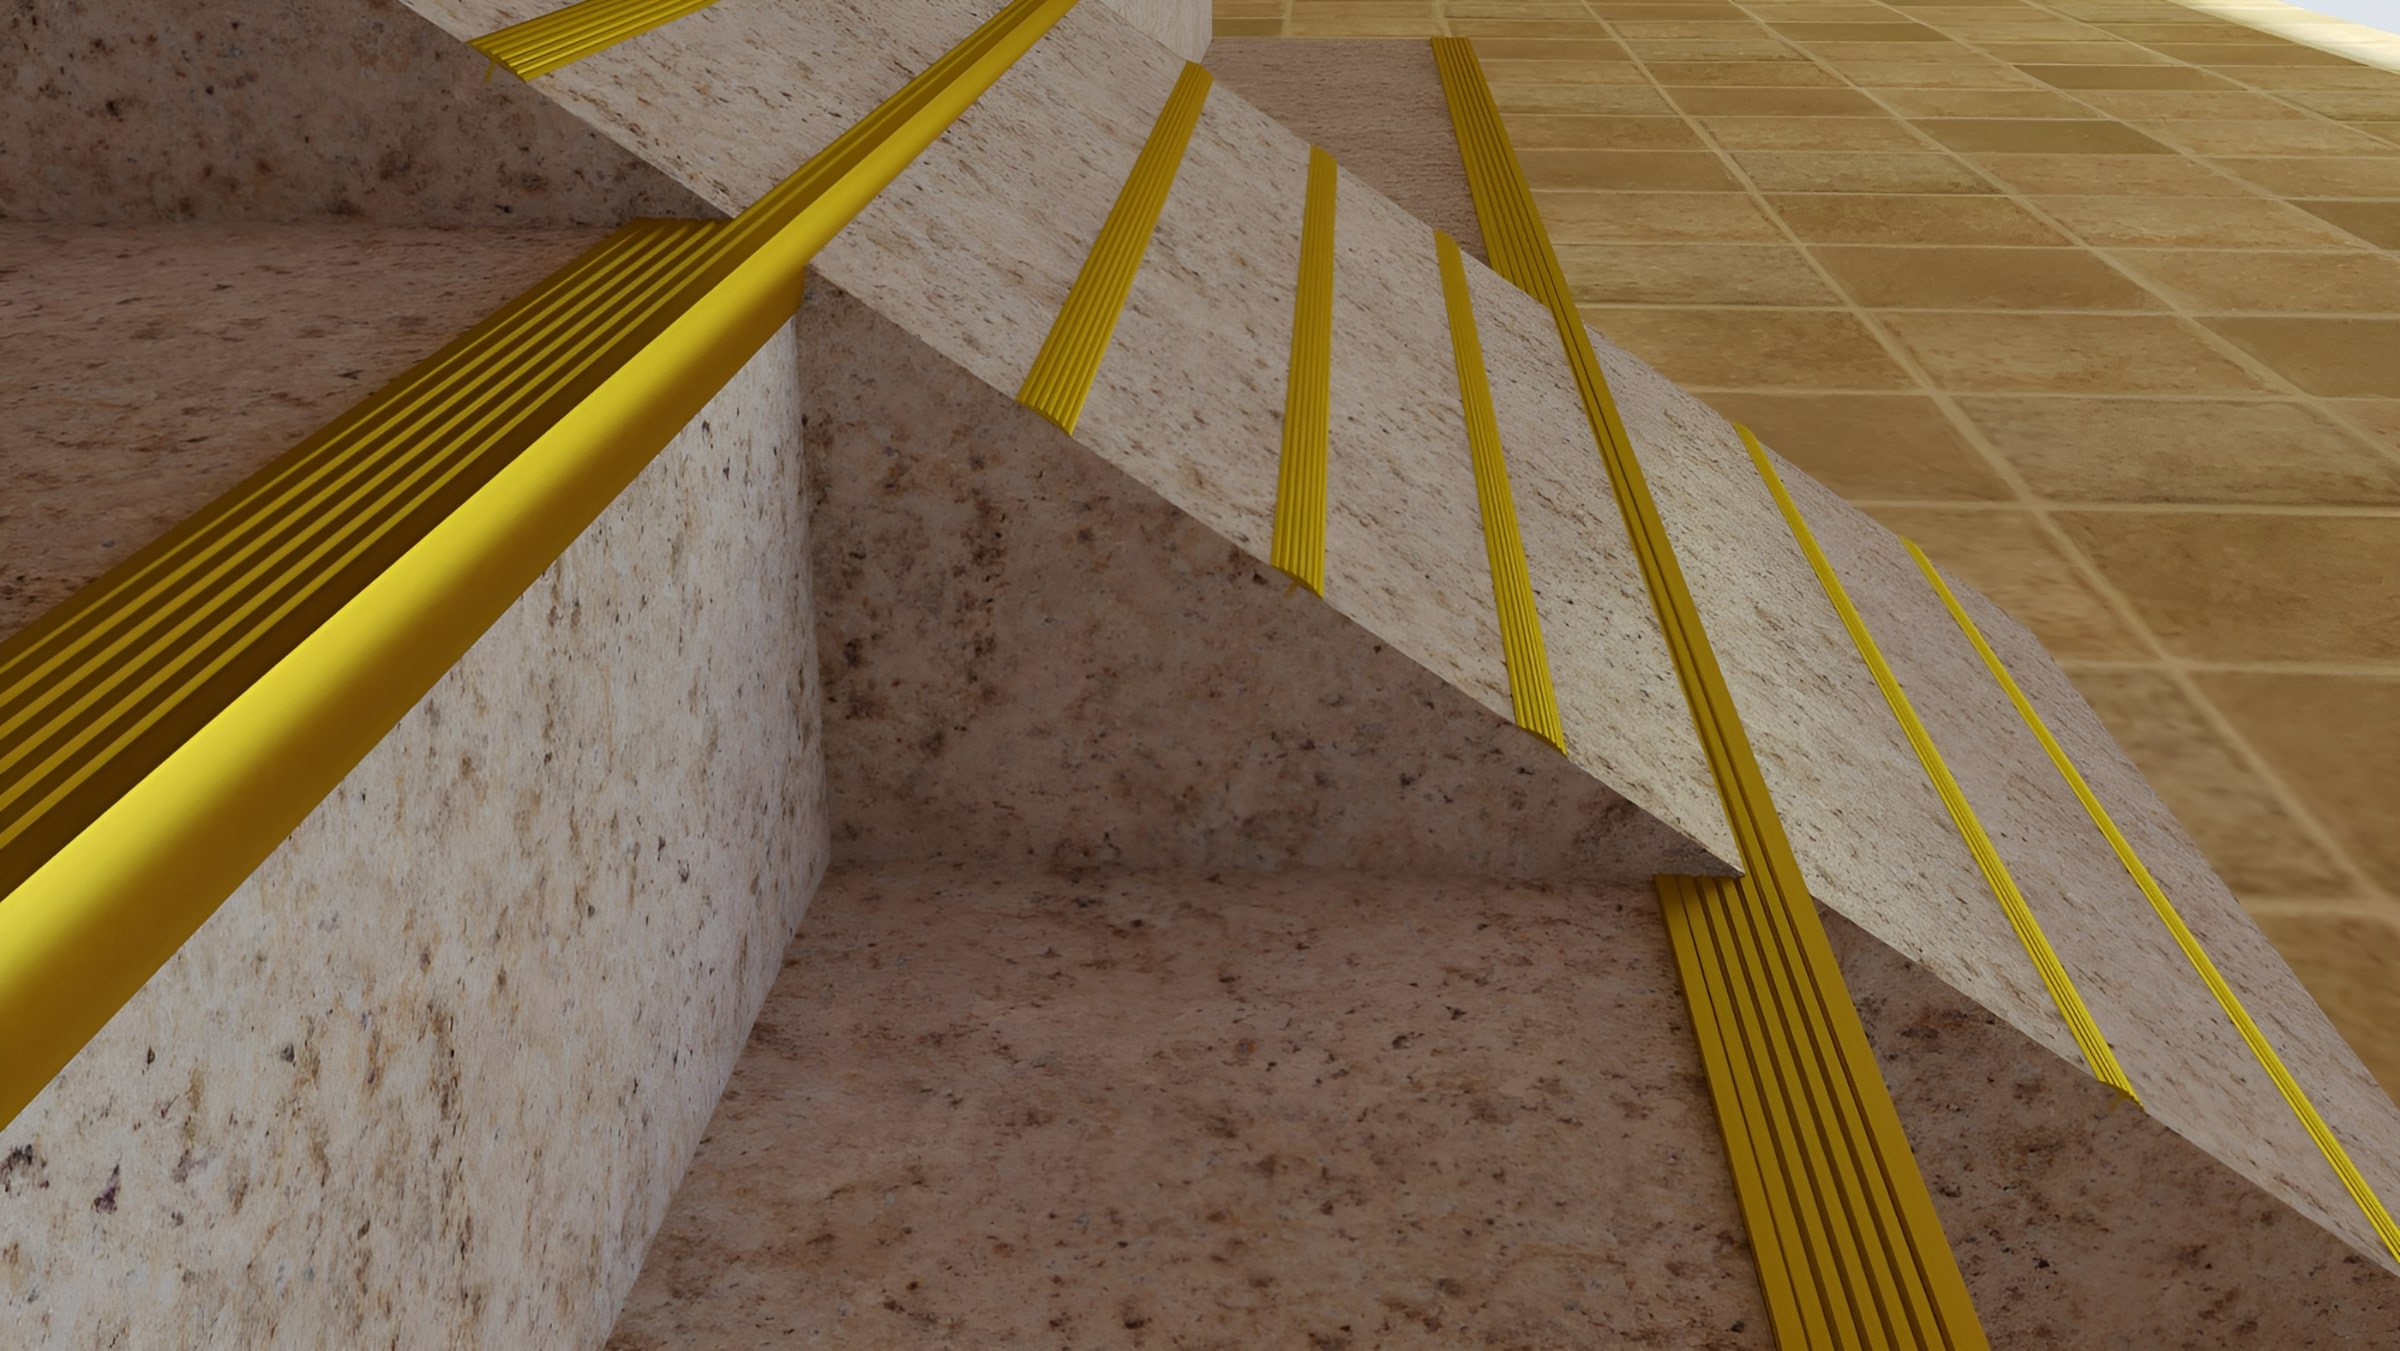 Sử dụng nẹp nhôm L41-N để trang trí giúp làm nổi bật các bậc cầu thang